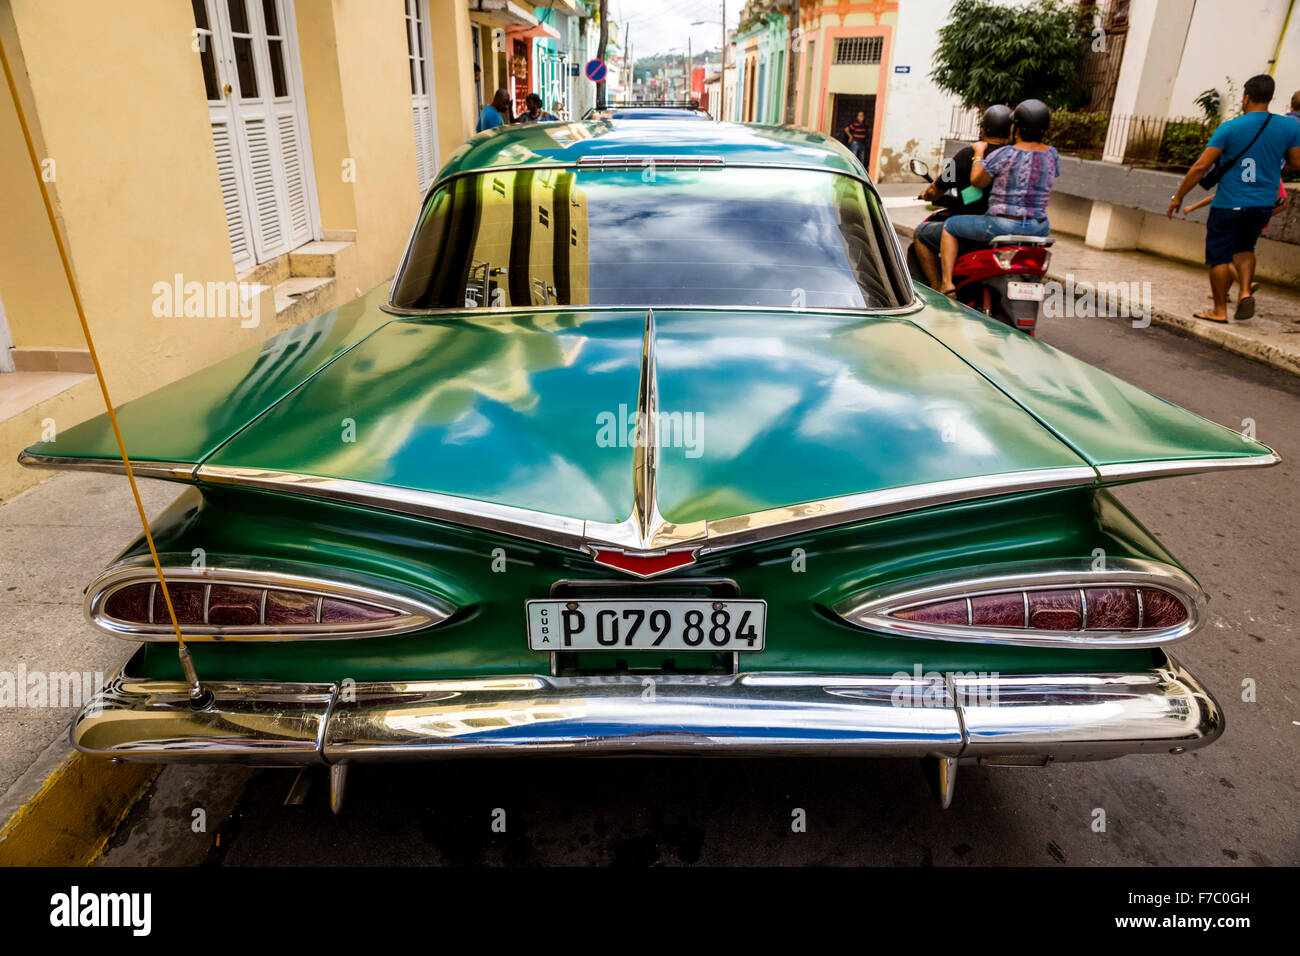 Vintage, historical street cruiser, green Impala, Streetlife in the center of Santa Clara at Parque de Santa Clara, Cuba, Stock Photo